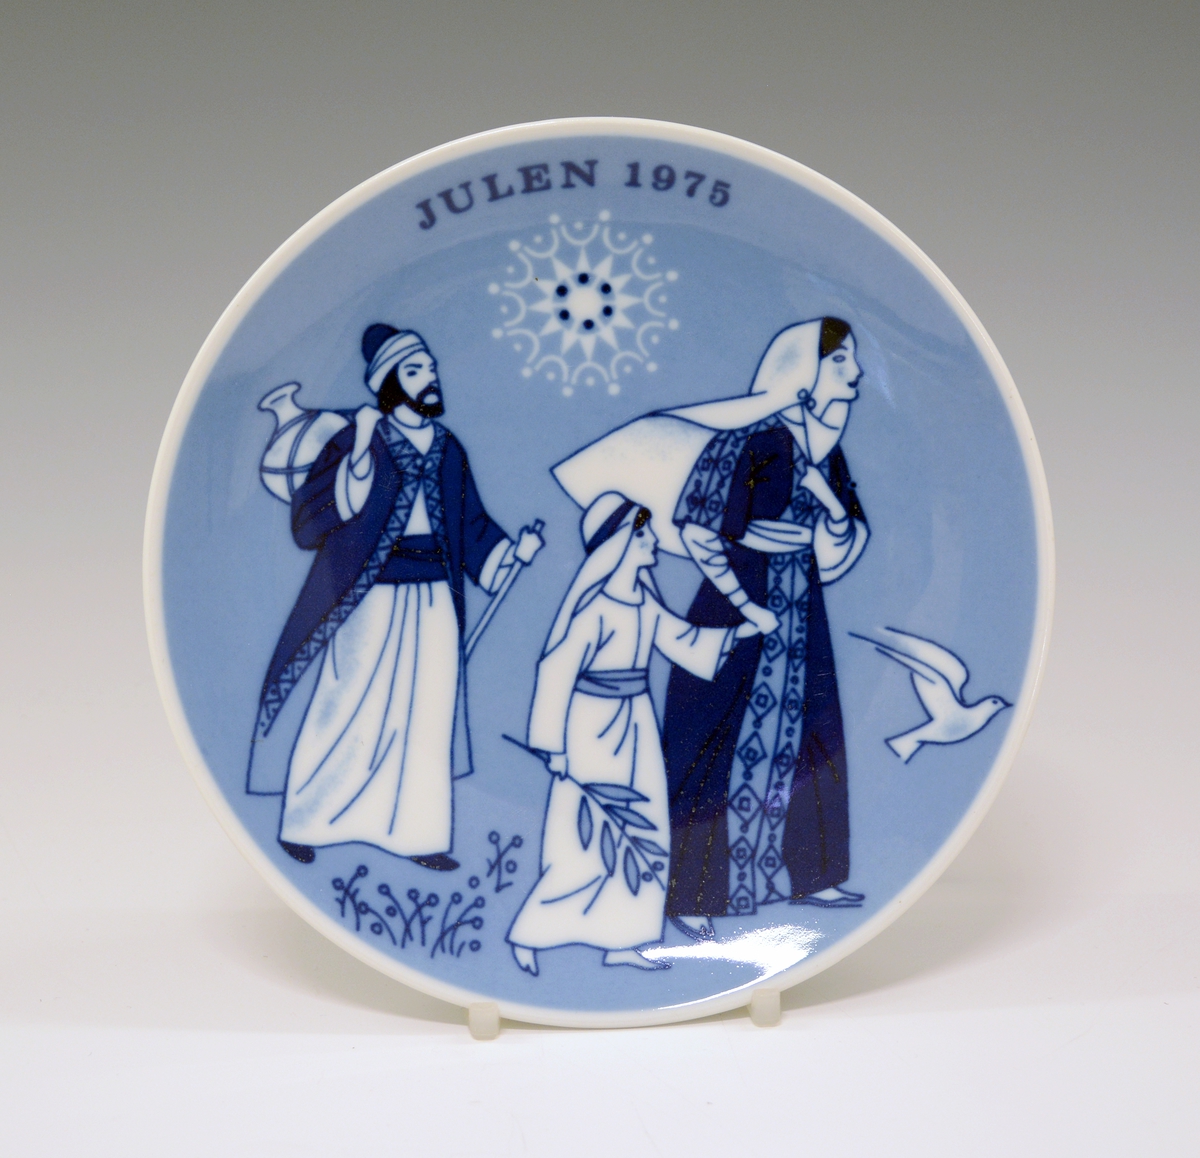 Juleplatte av porselen. Glatt modell. Hvit glasur. Dekorert med Jesus, Maria og tekst Julen 1975 i ulike blåfarger.
Dekor av Gunnar Bratlie.